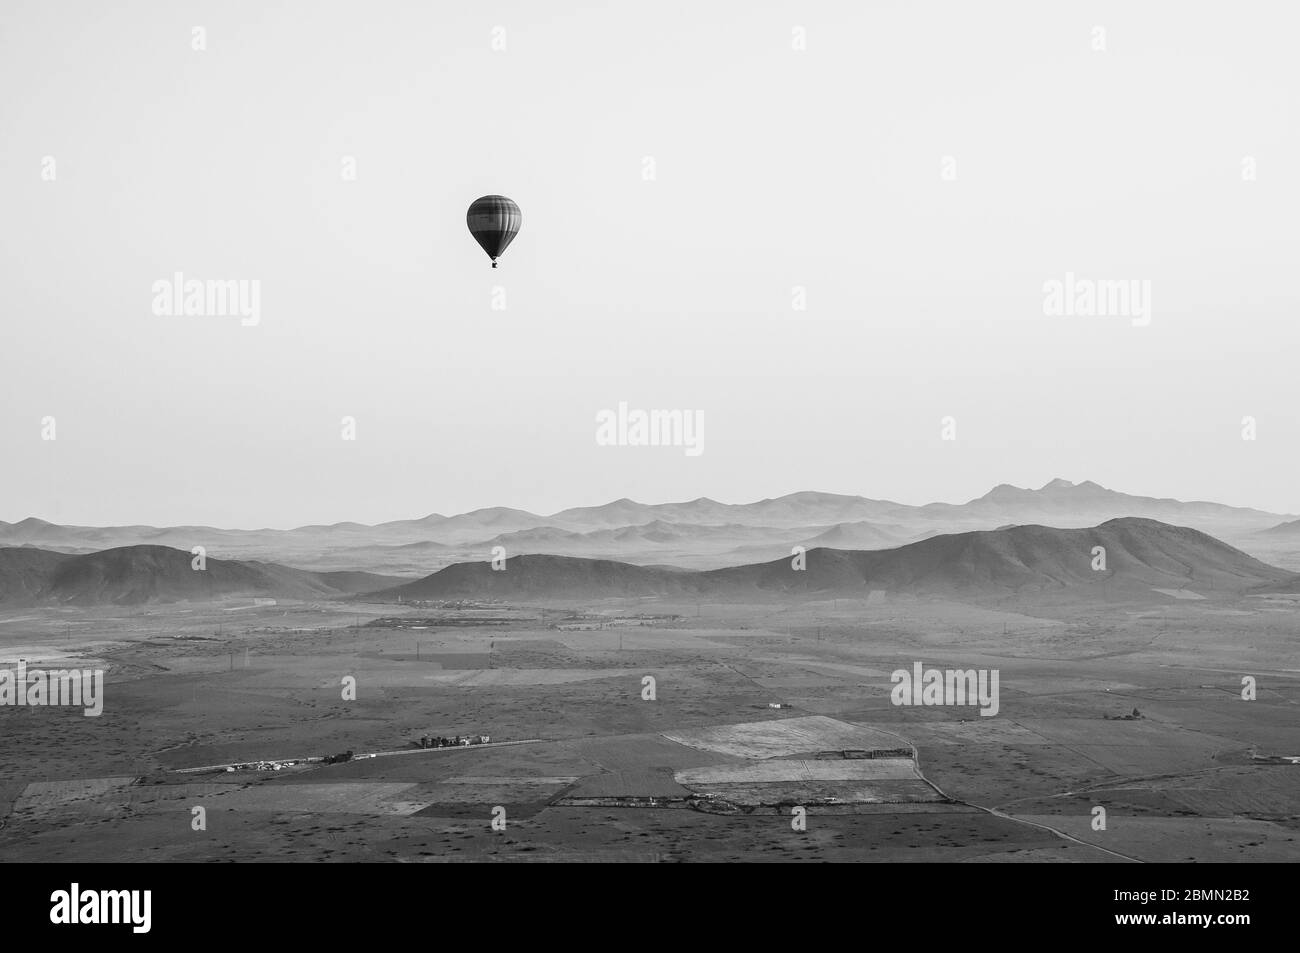 Photo en noir et blanc de style rétro d'une montgolfière au-dessus du maroc. Belles montagnes de l'Atlas au loin, avec un autre ballon dans le ciel. Banque D'Images